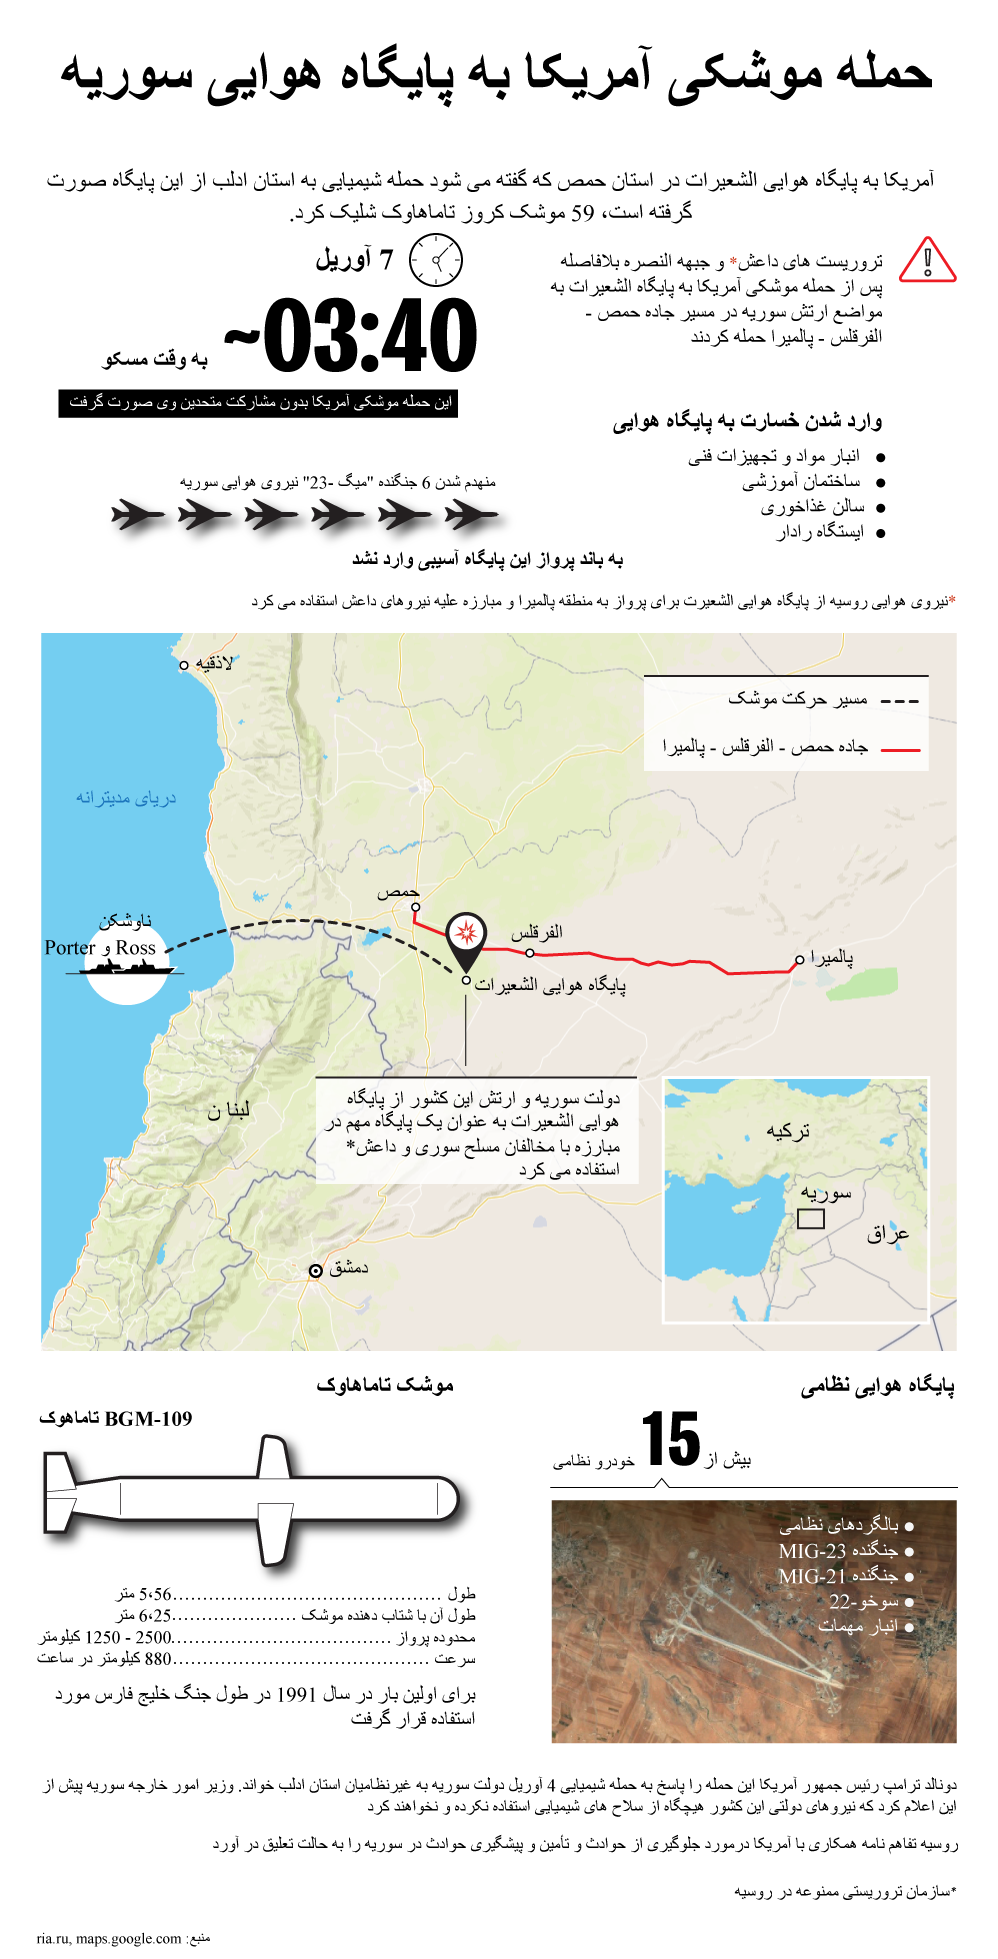 داده نمایی: حمله آمریکا به پایگاه هوایی سوریه - اسپوتنیک افغانستان  